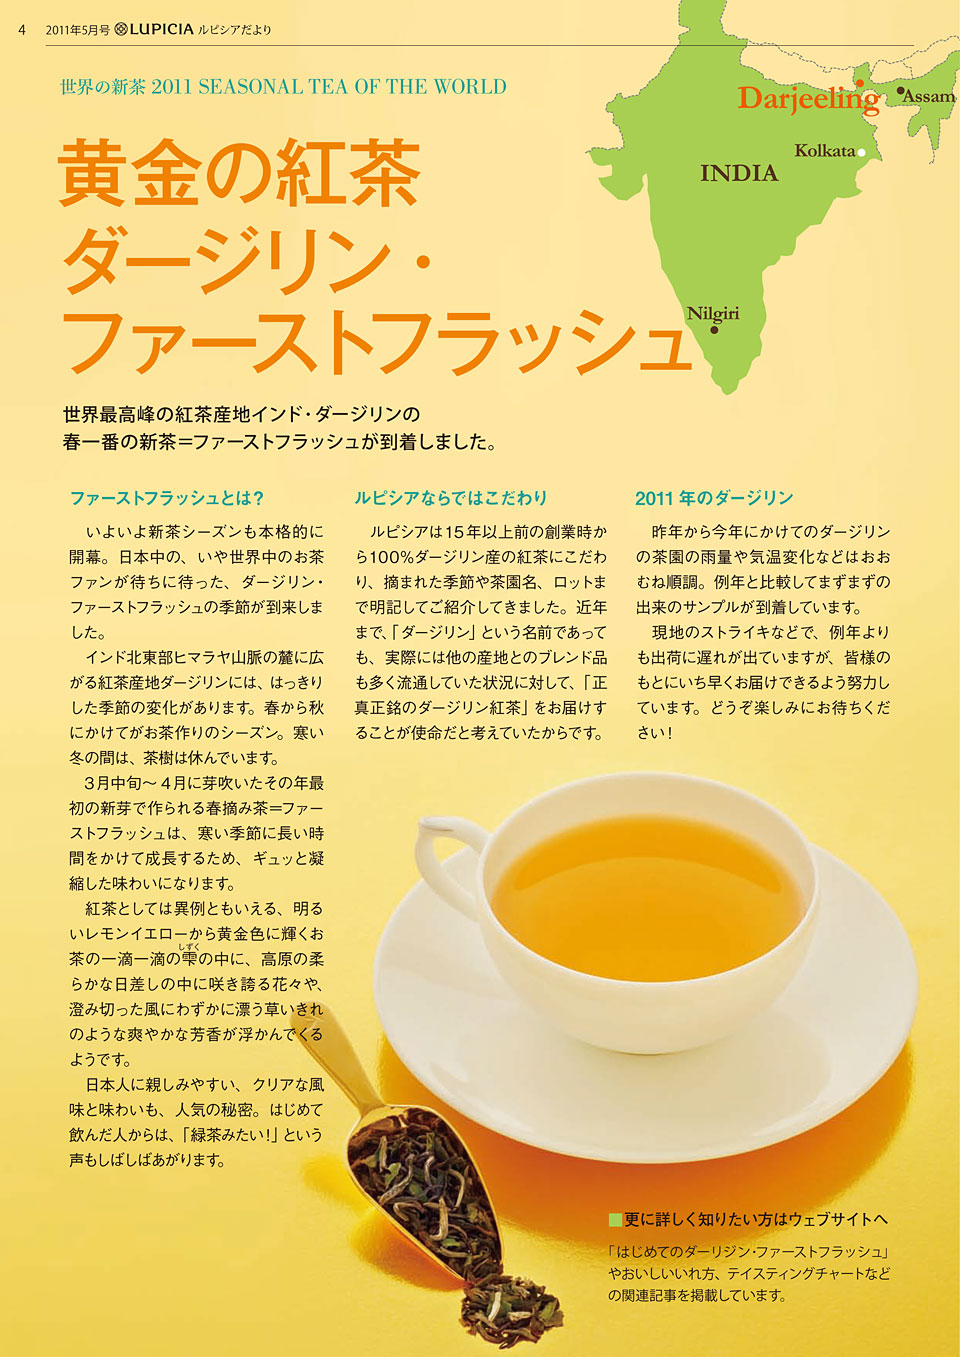 特集 お茶で元気に ルピシア 人気のお茶ランキング ルピシアだより バックナンバー 11年5月号 世界のお茶専門店 ルピシア 紅茶 緑茶 烏龍茶 ハーブ